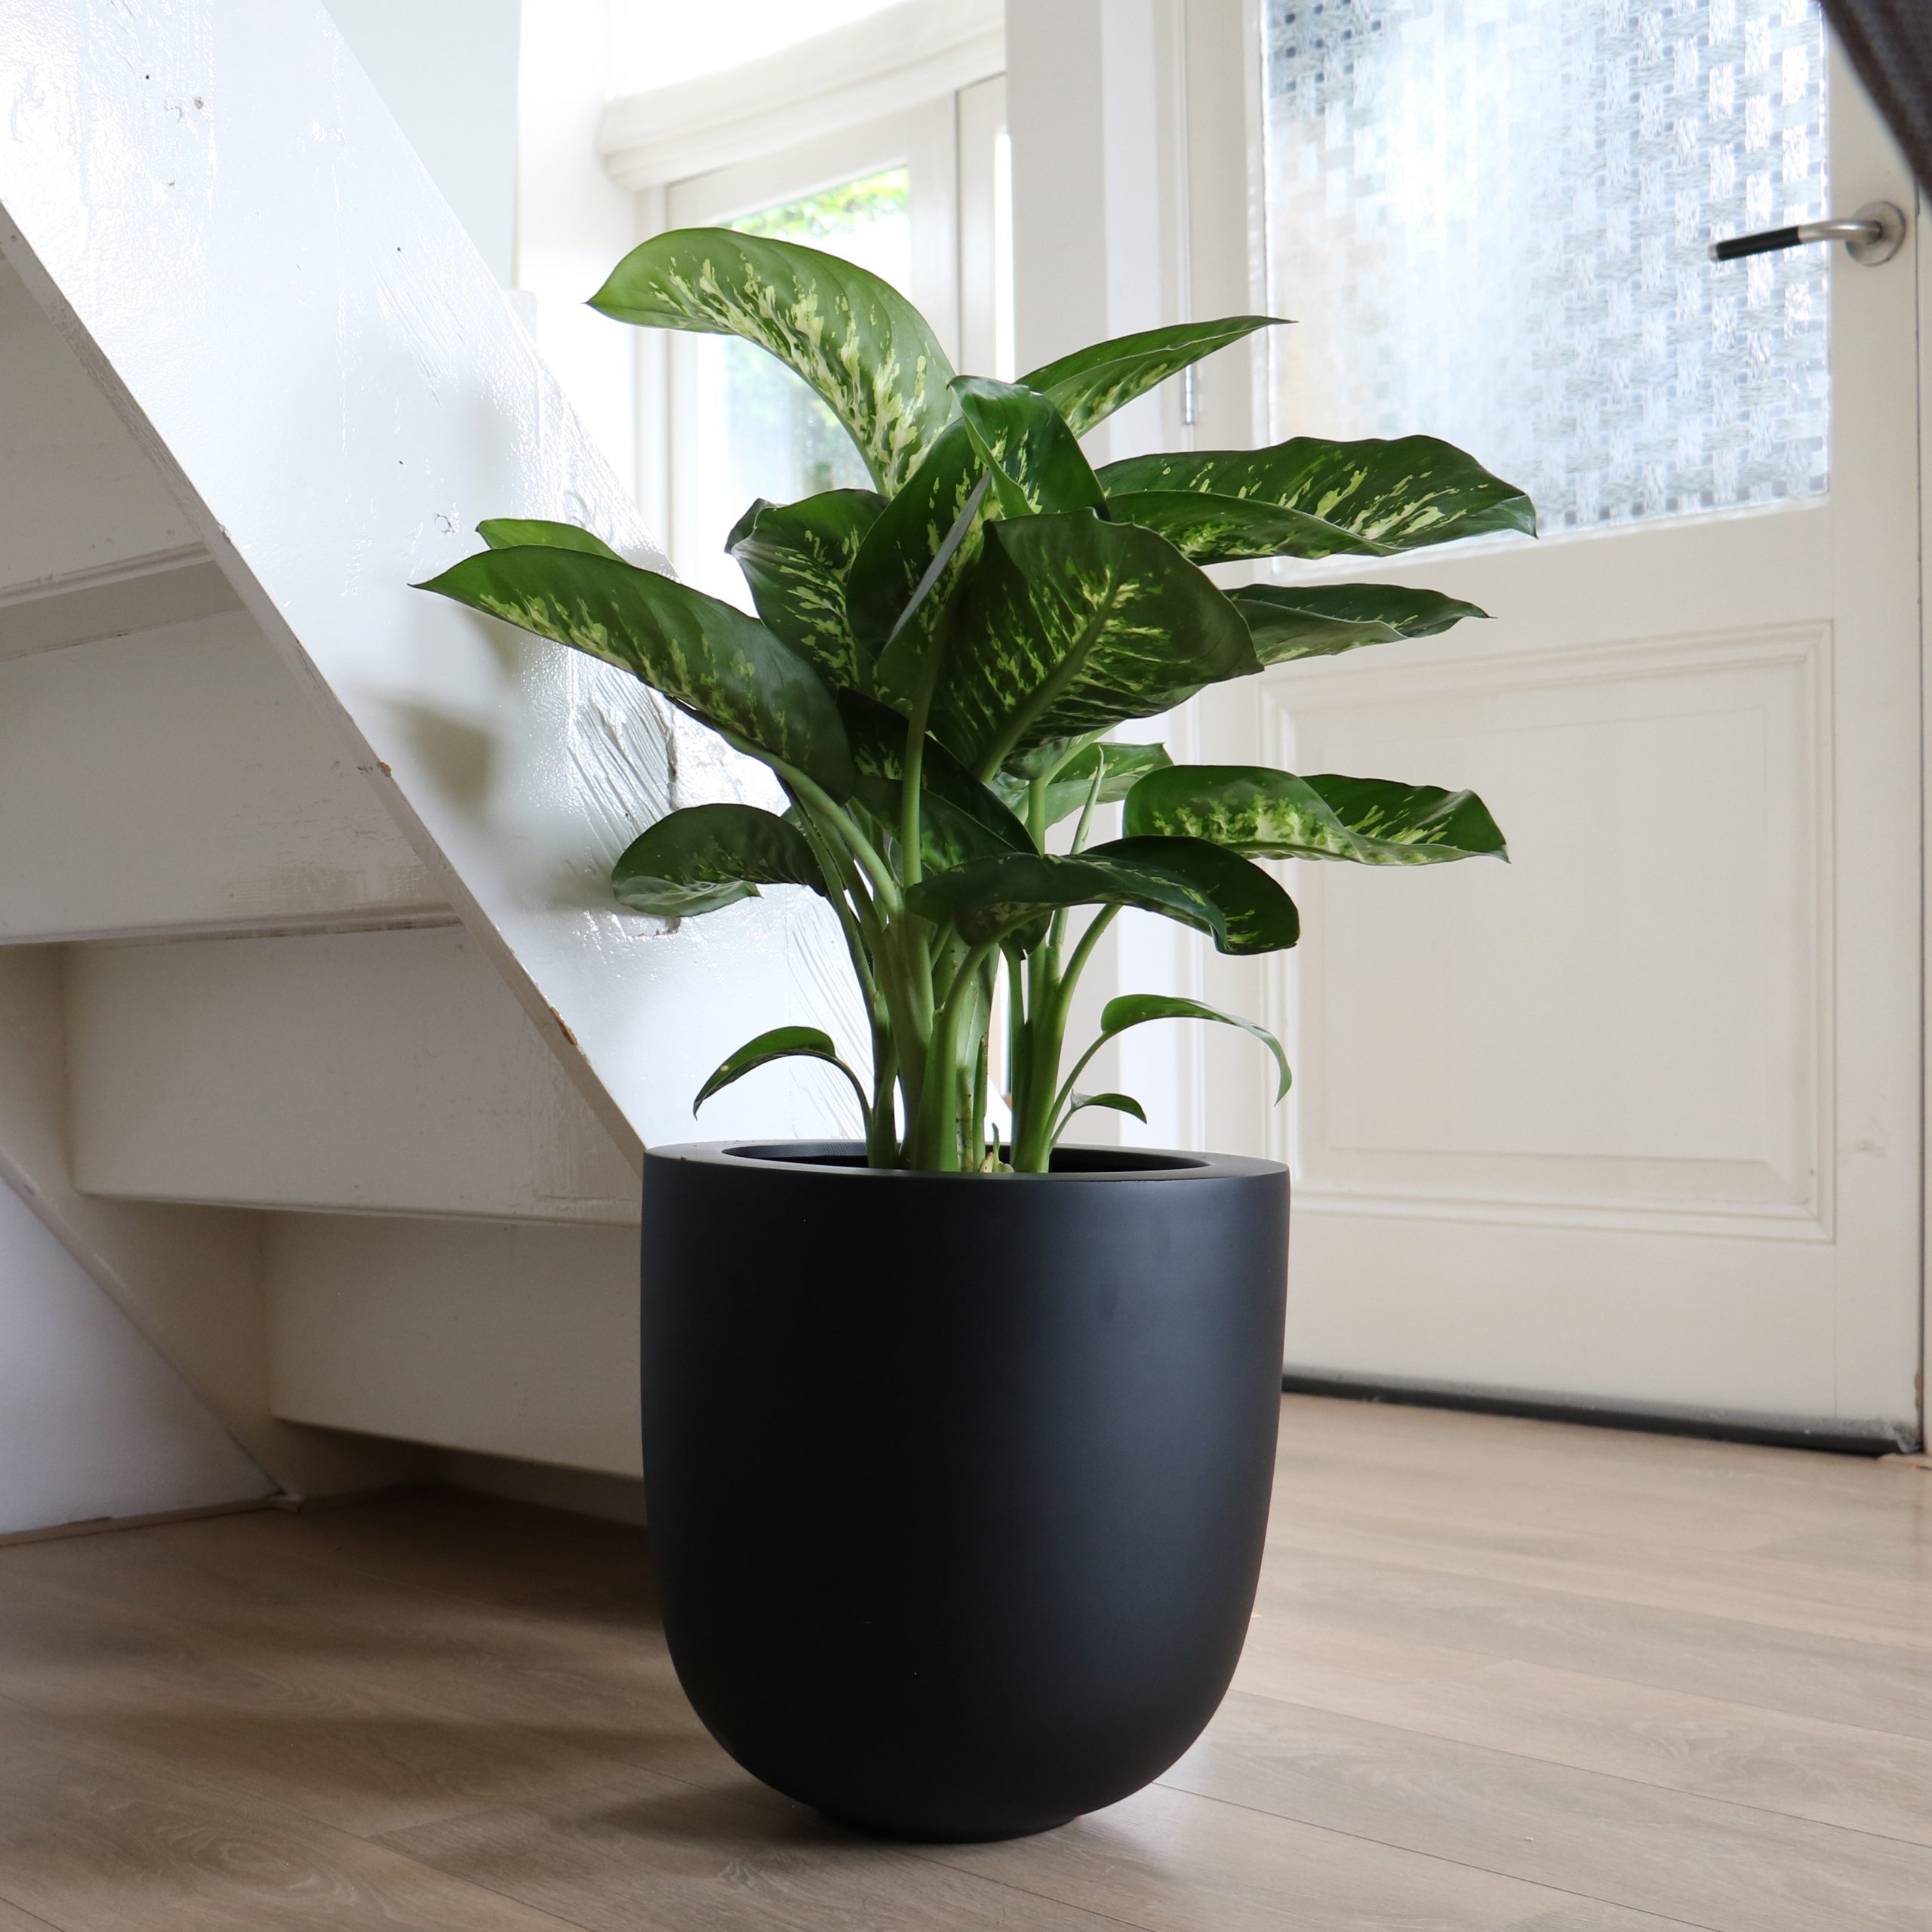 Peuter Aggregaat Australische persoon Plant Design; zet groen op nummer één! | Vase The World